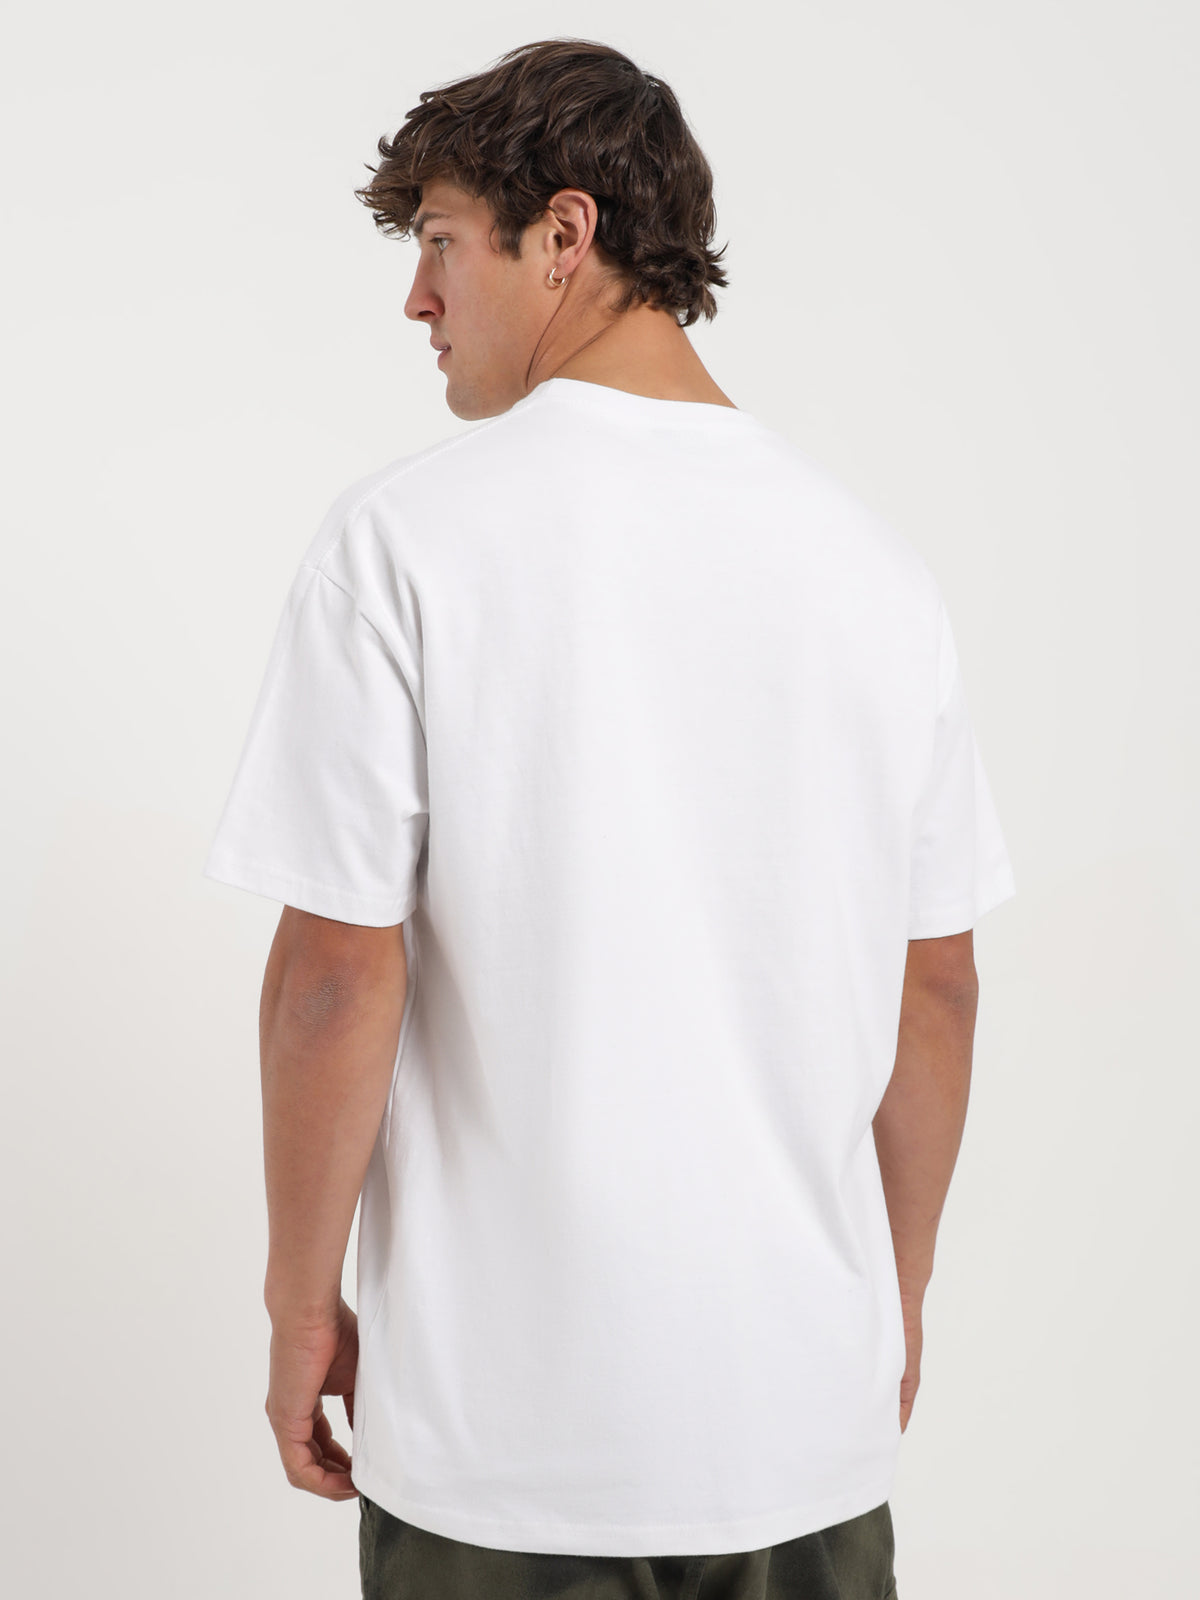 King S HW T-Shirt in White